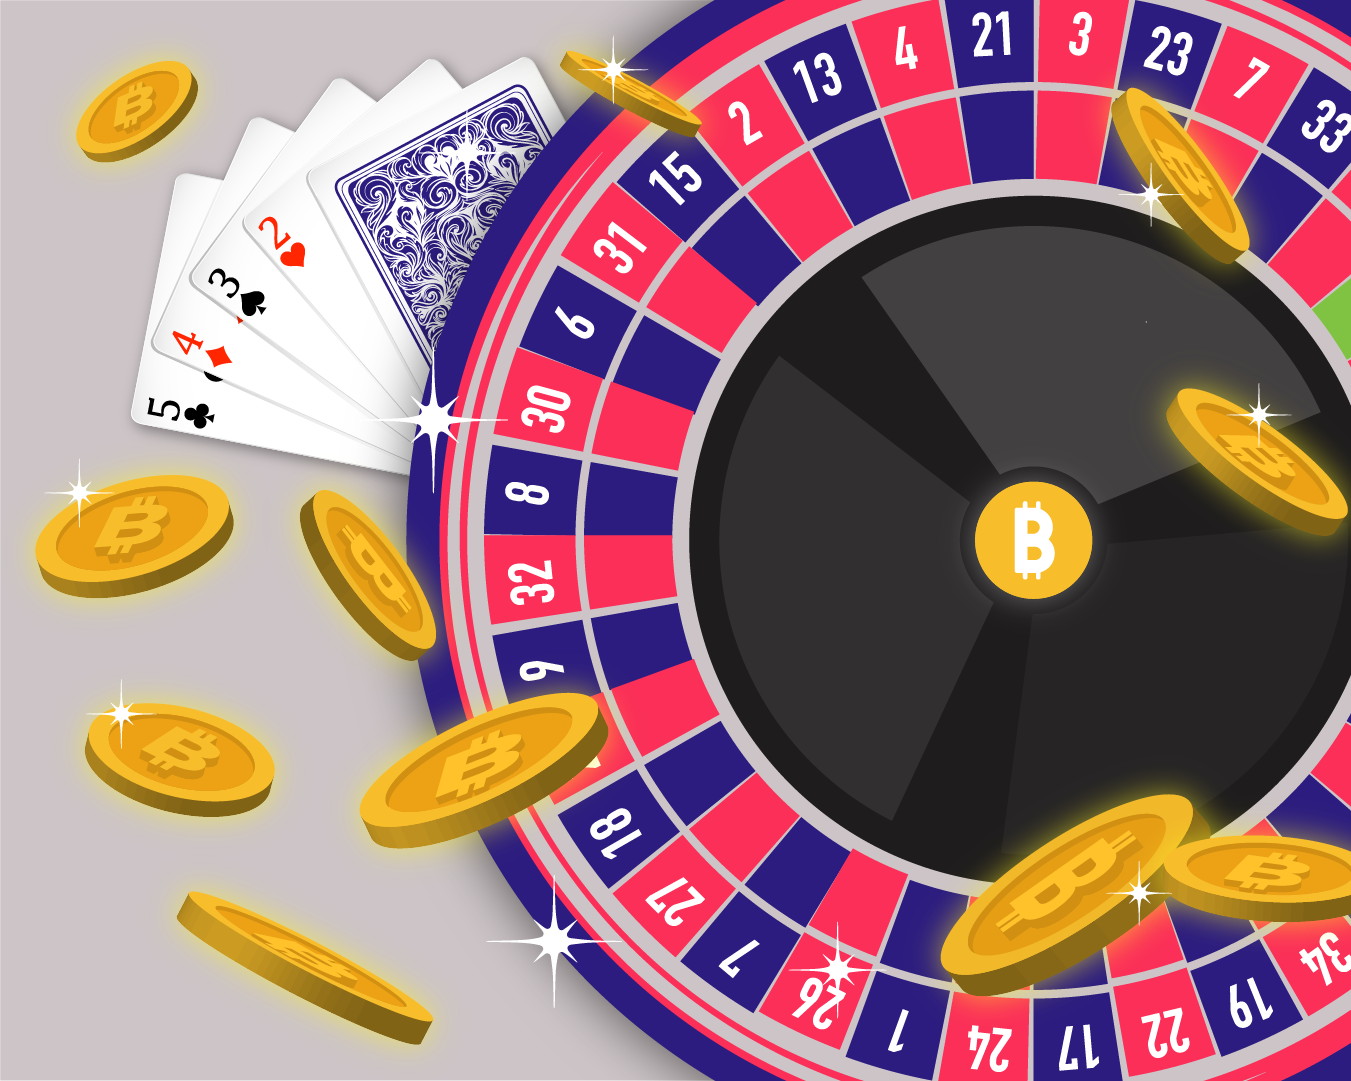 Top Bitcoin Casinos Statistik: Diese Zahlen sind echt